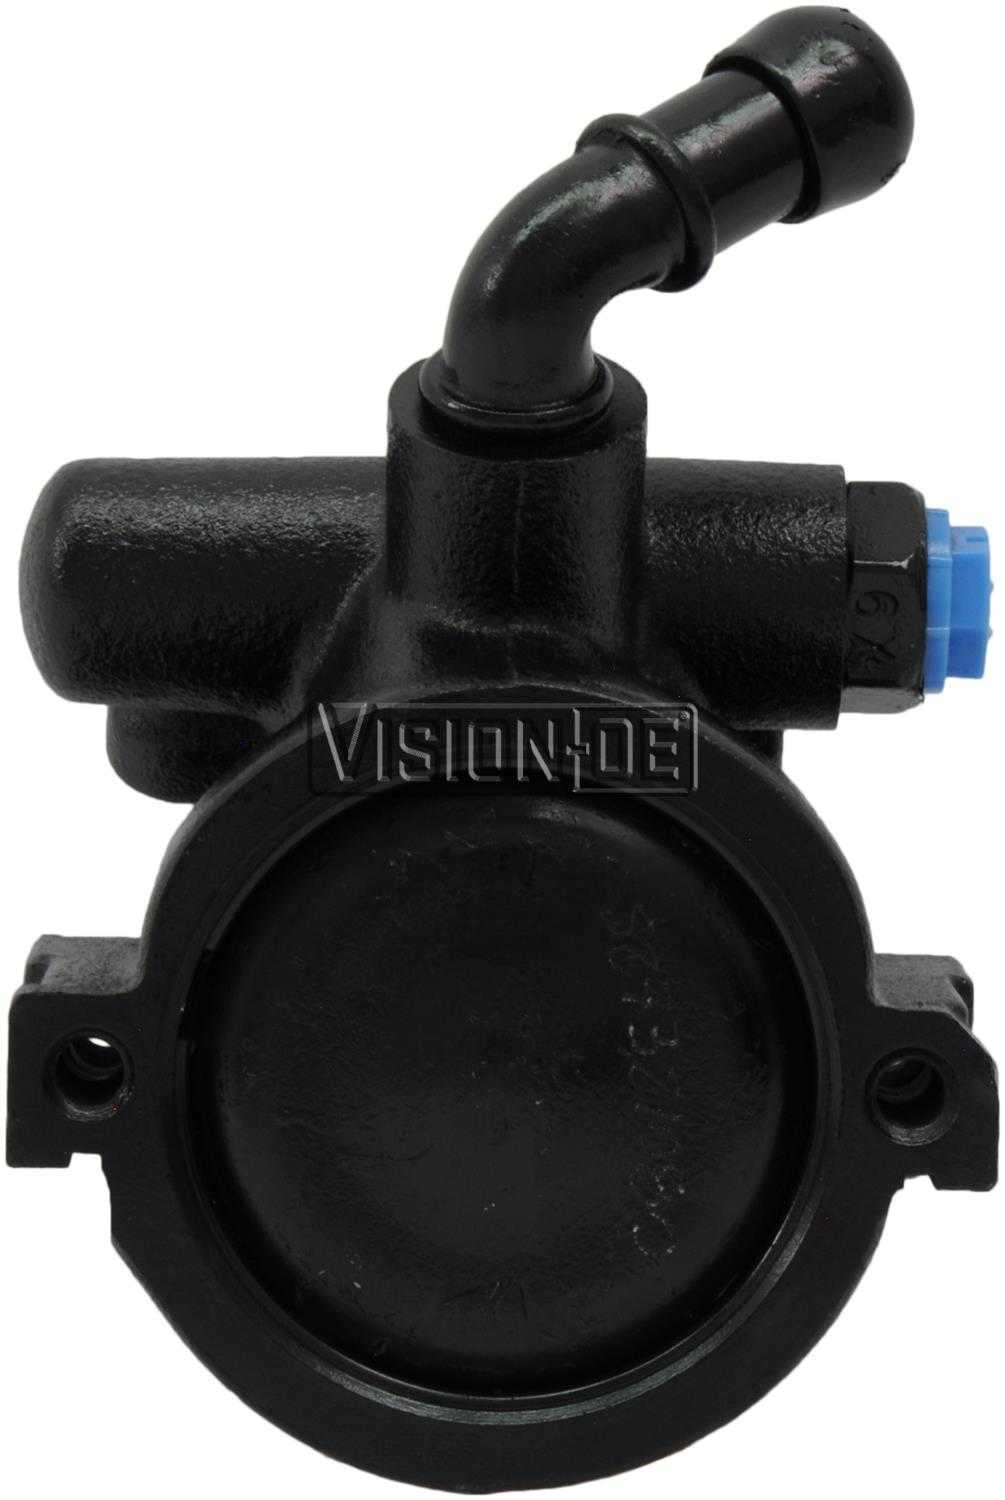 VISION-OE - Reman Power Steering Pump - VOE 734-0150